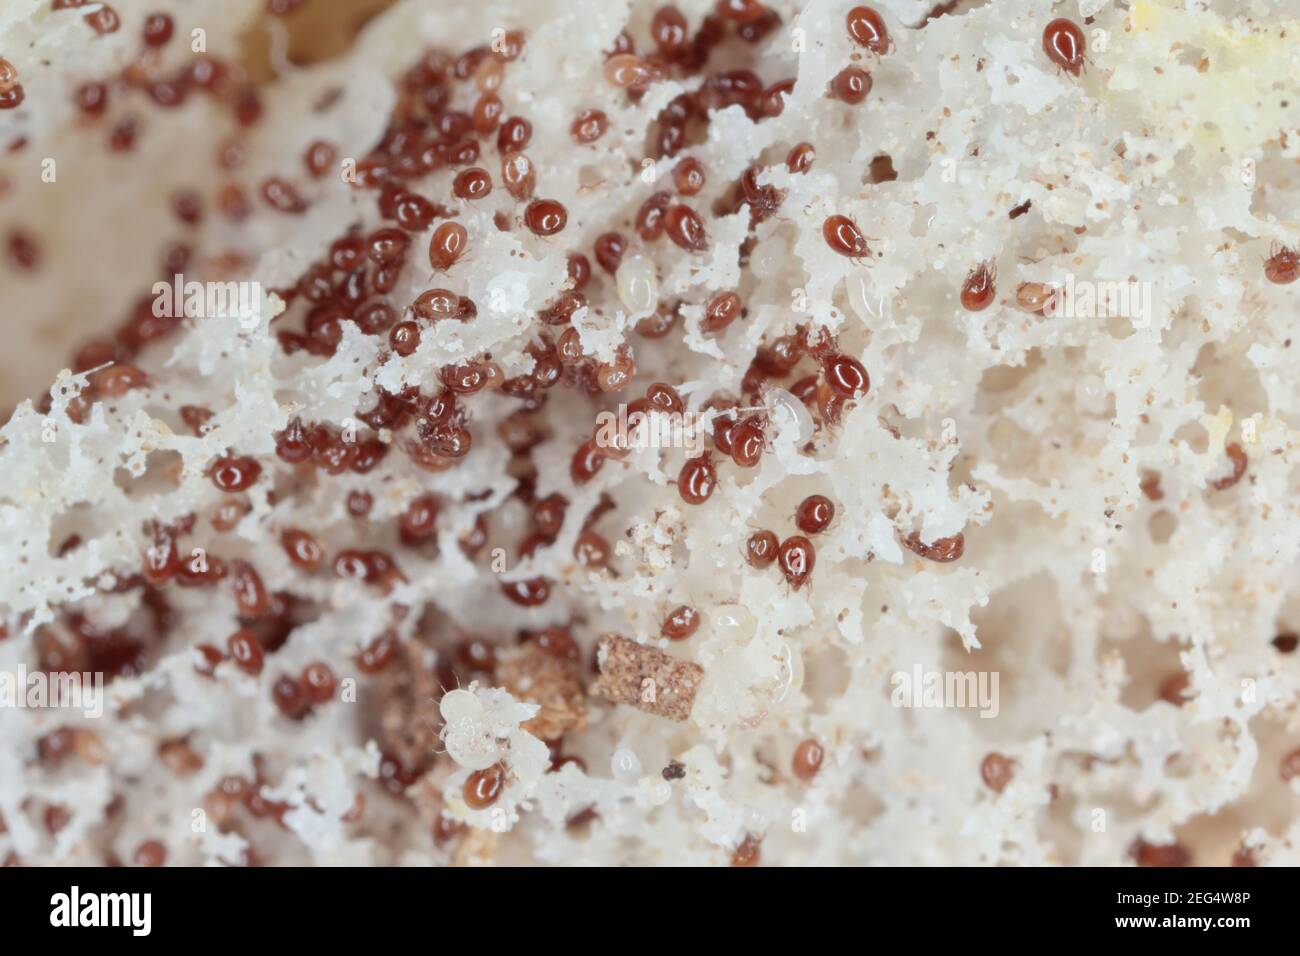 Grossissement des acariens de la famille des acaridae sur le pain moldy sont parasites courants dans le stockage des aliments Banque D'Images